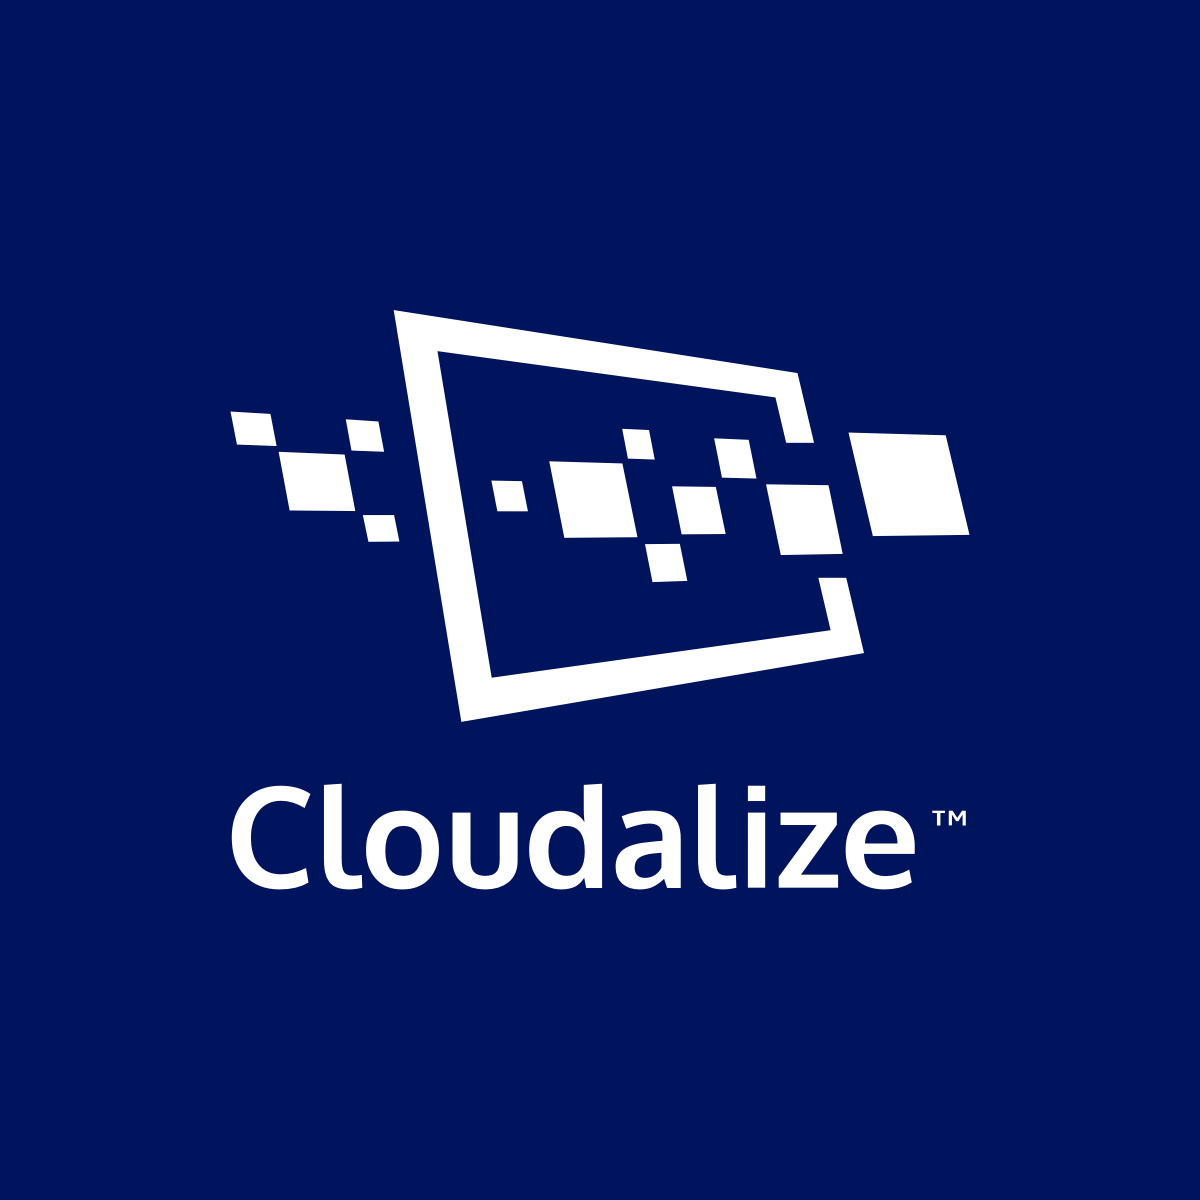 (c) Cloudalize.com